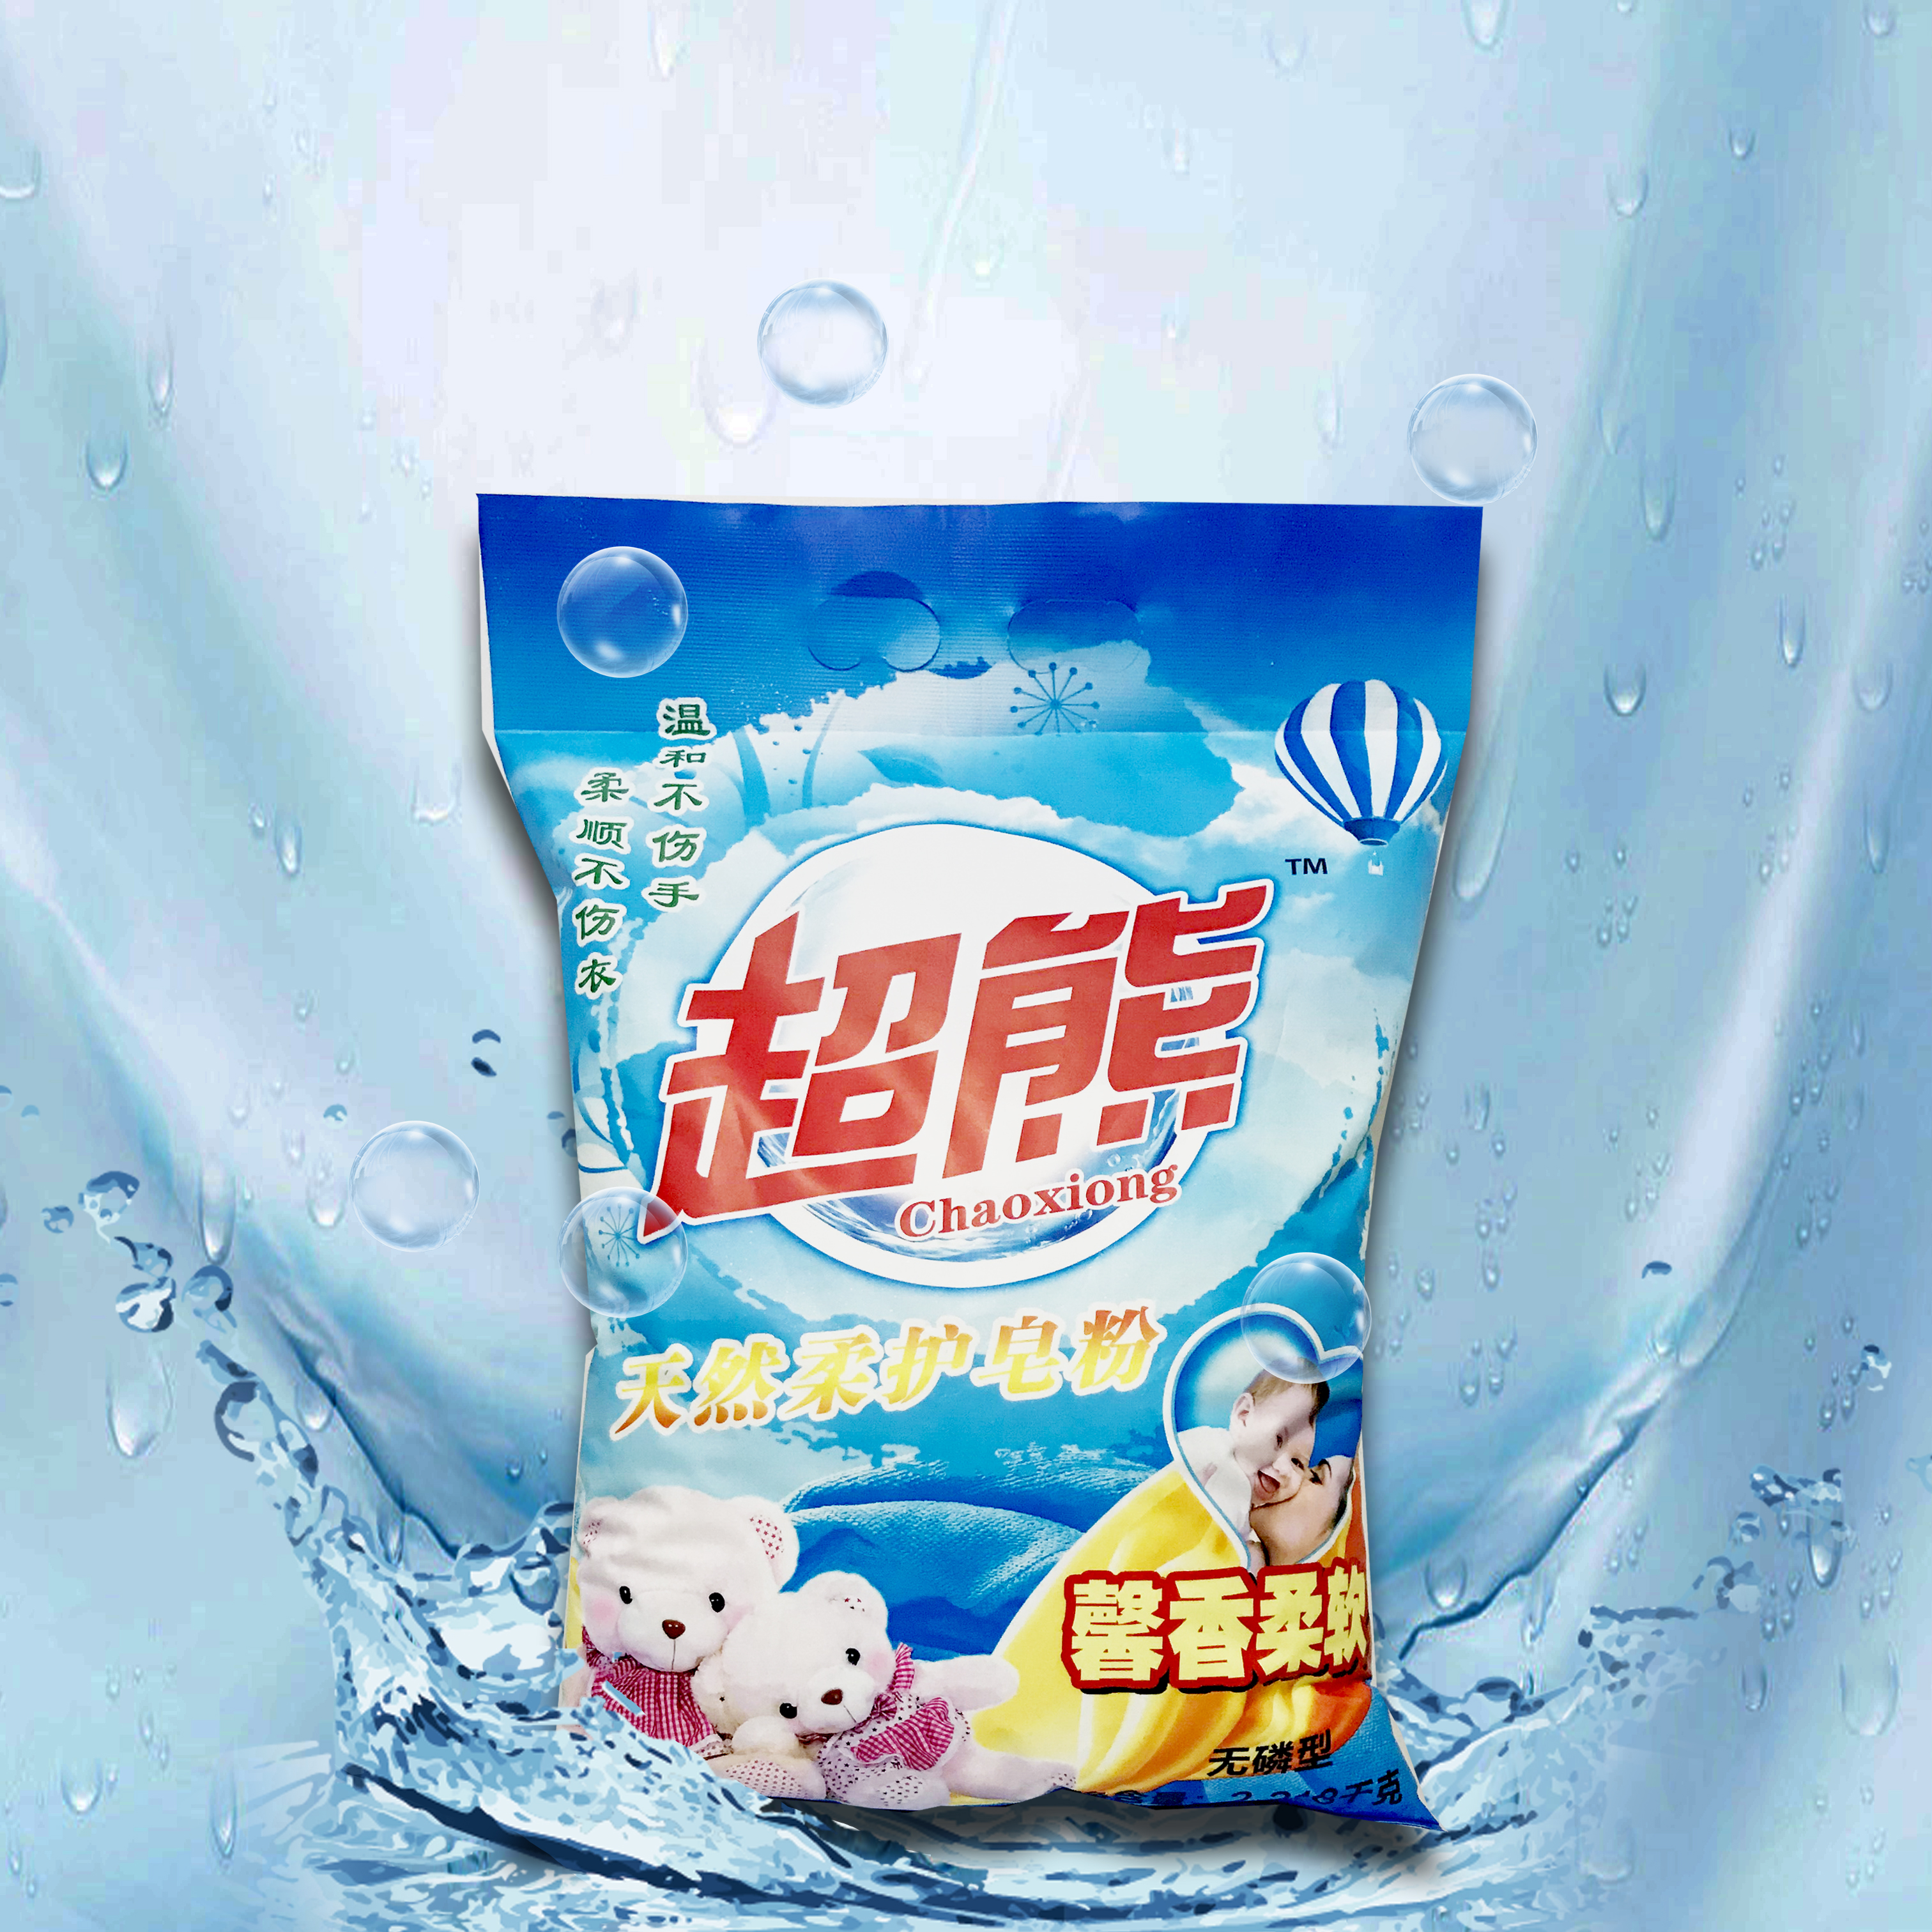 贵州皂粉厂 贵州皂粉厂供应 贵州皂粉厂制造 贵州皂粉厂家